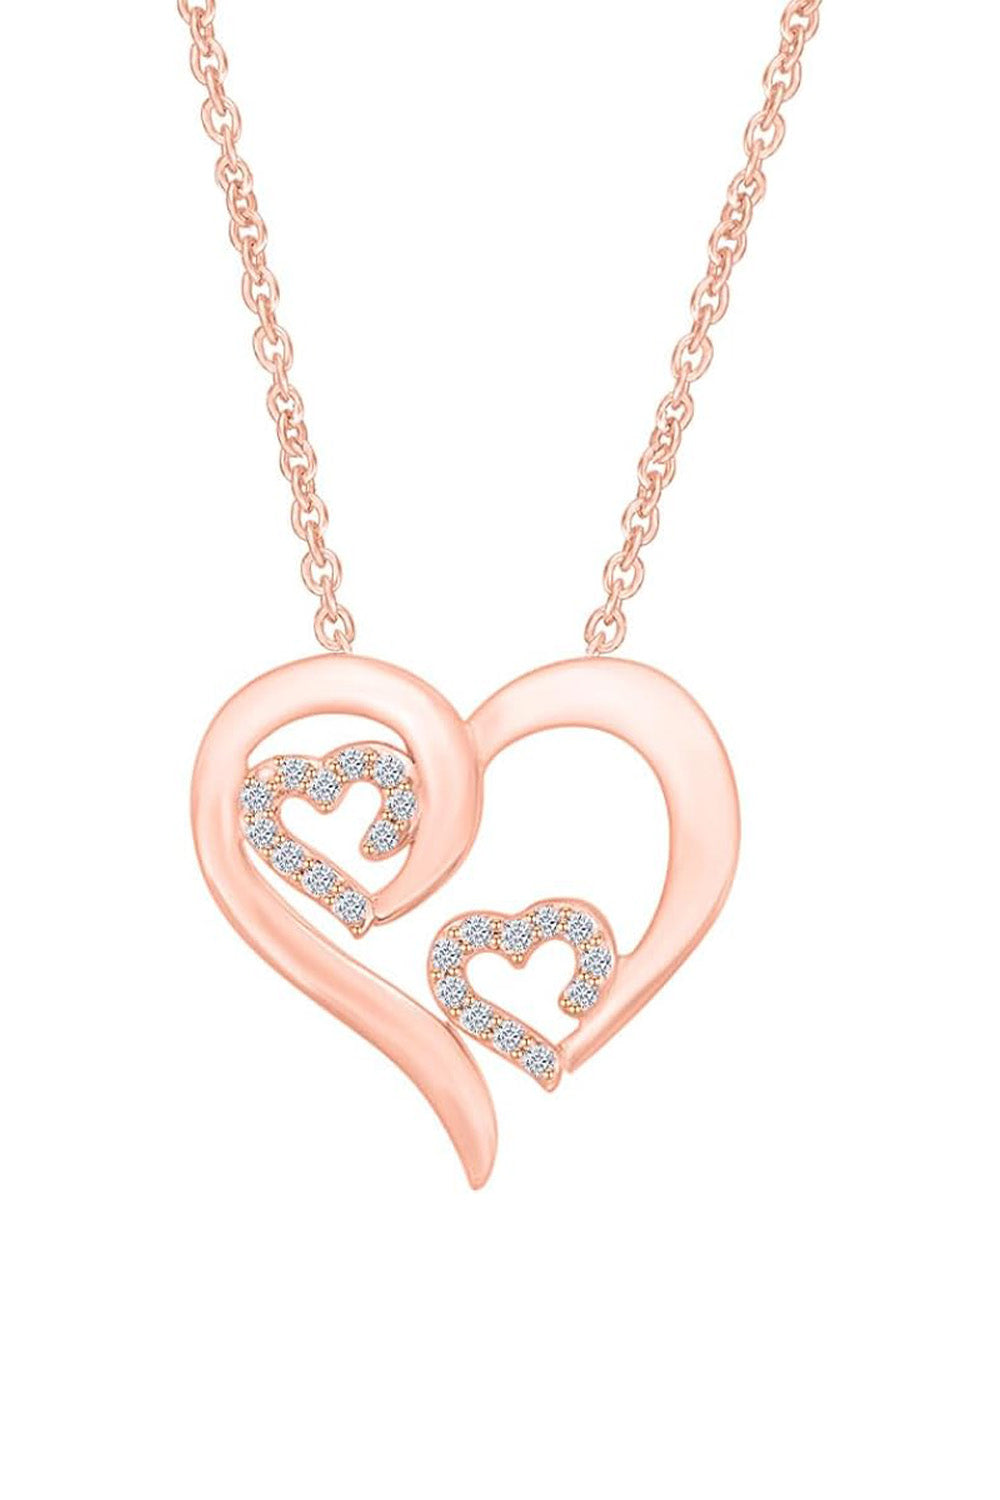 Rose Gold Color Triple Heart Pendant Necklace, Buy Pendant Online 